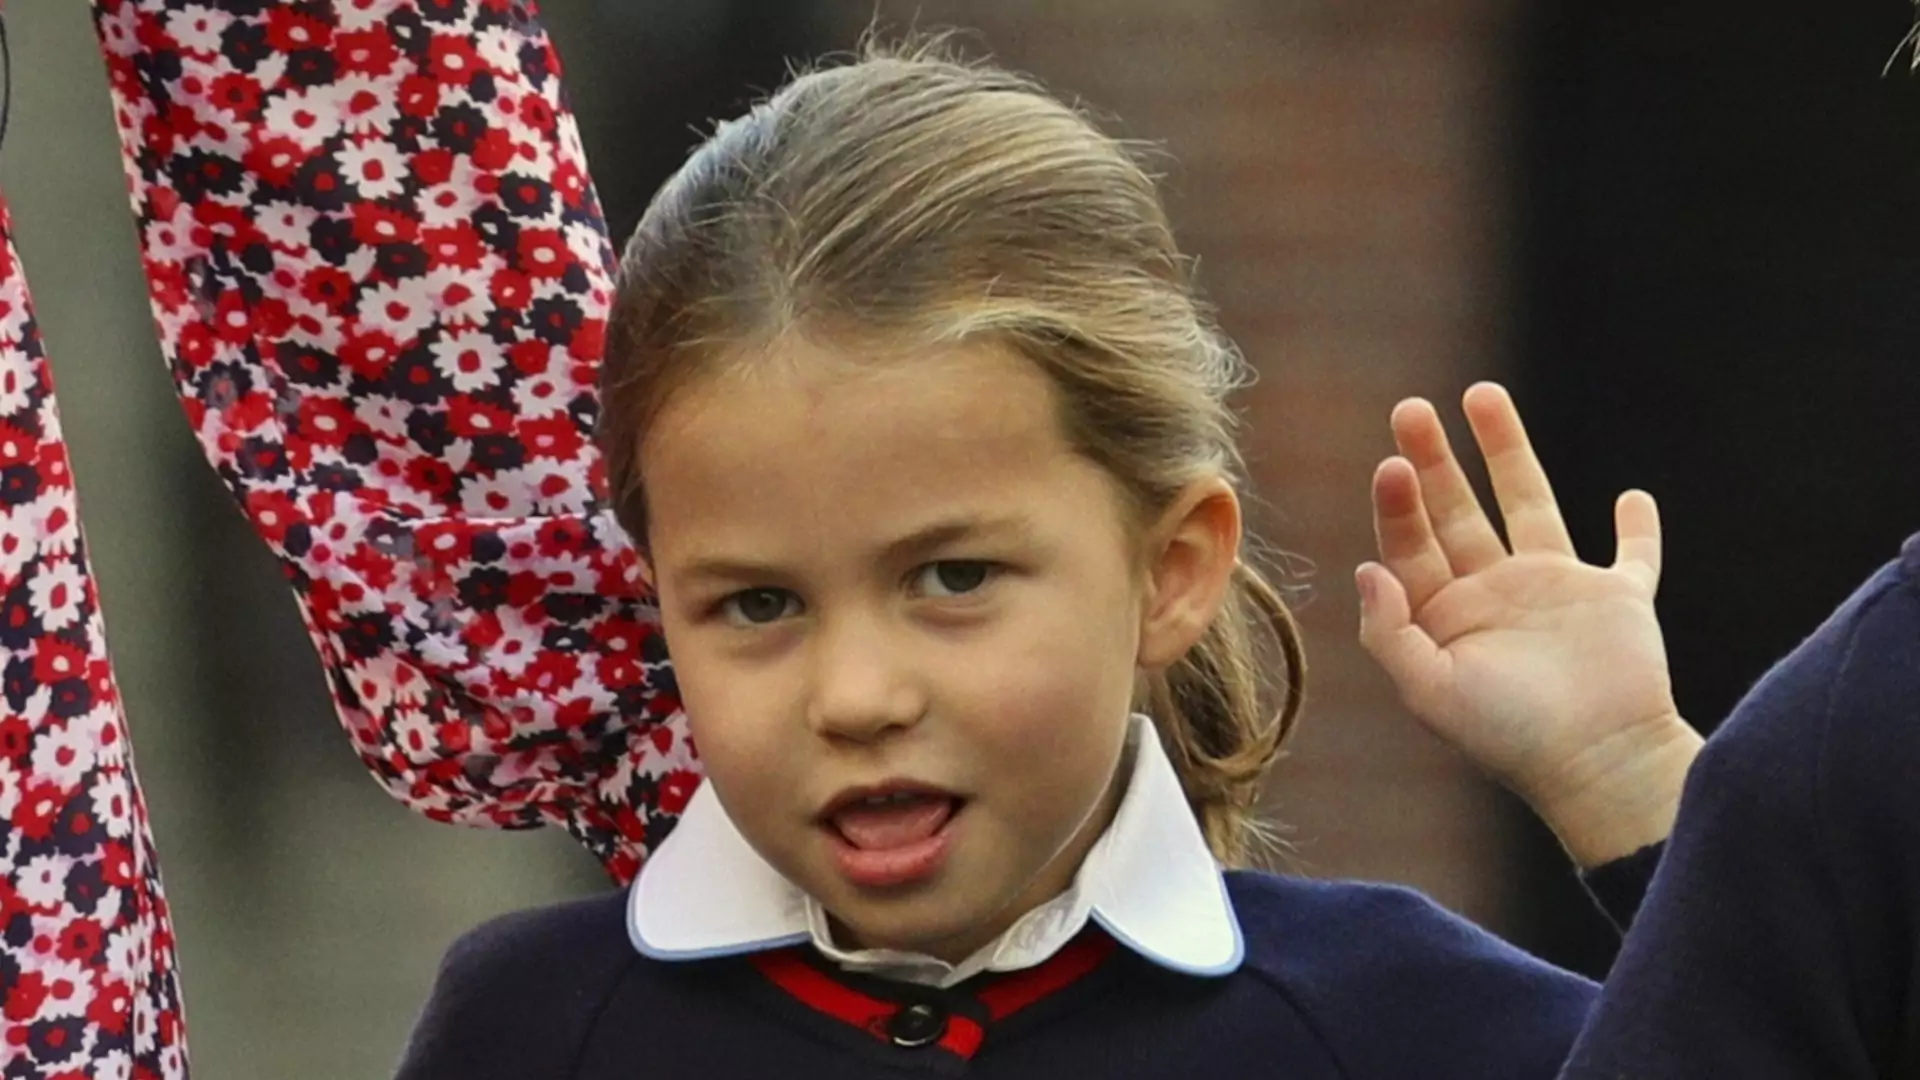 Zakaz przyjaźni i konieczność bycia uprzejmym - zasady w nowej szkole księżniczki Charlotte brzmią dziwnie